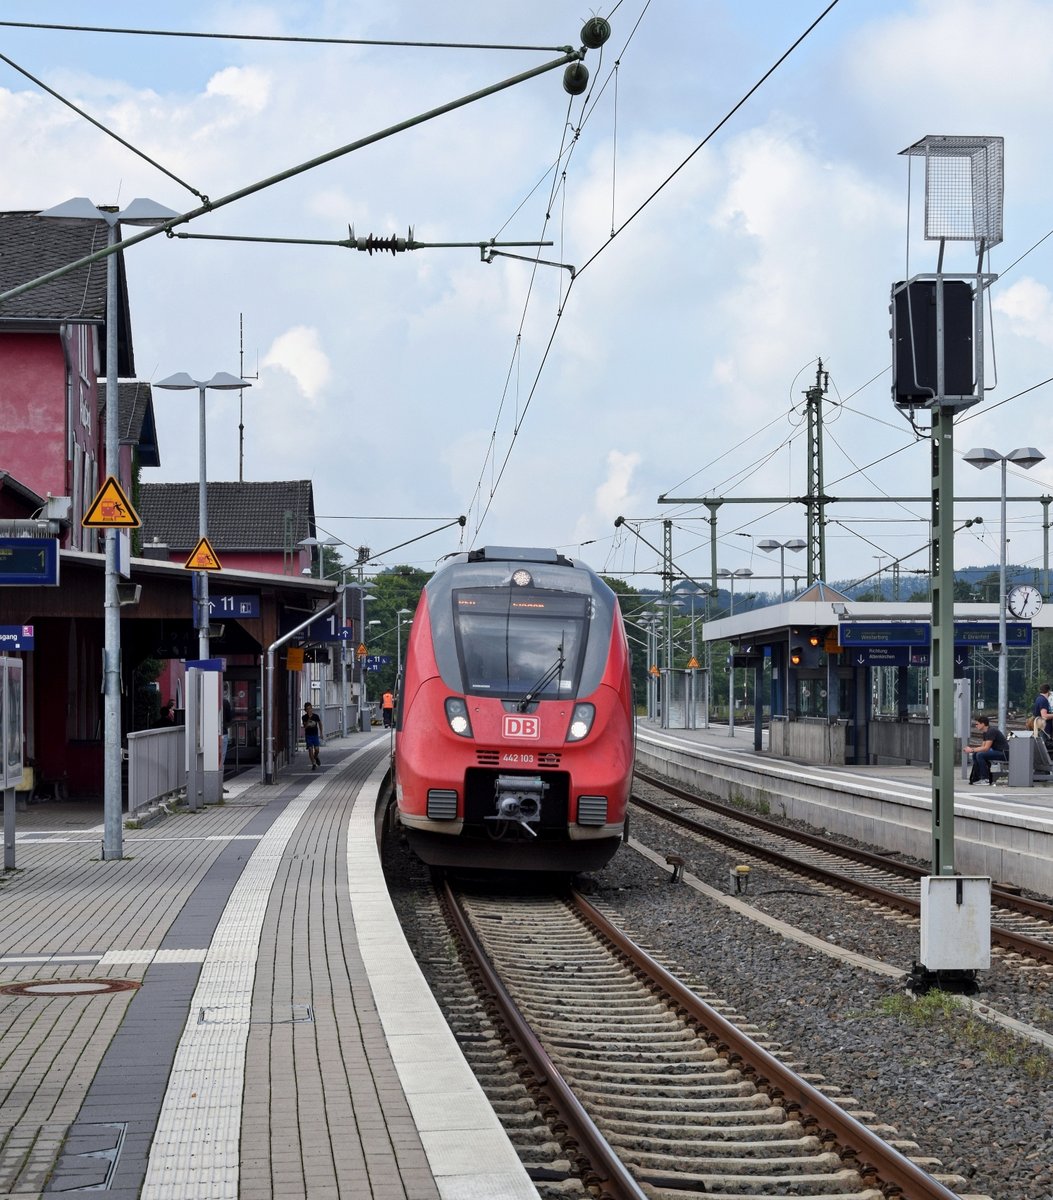 DB Regio 442 103/603 als RE 9 (10911)  Rhein-Sieg-Express  setzt am 13.08.17 nach einem Halt in Au (Sieg) seine Fahrt von Aachen Hbf nach Siegen Hbf fort.